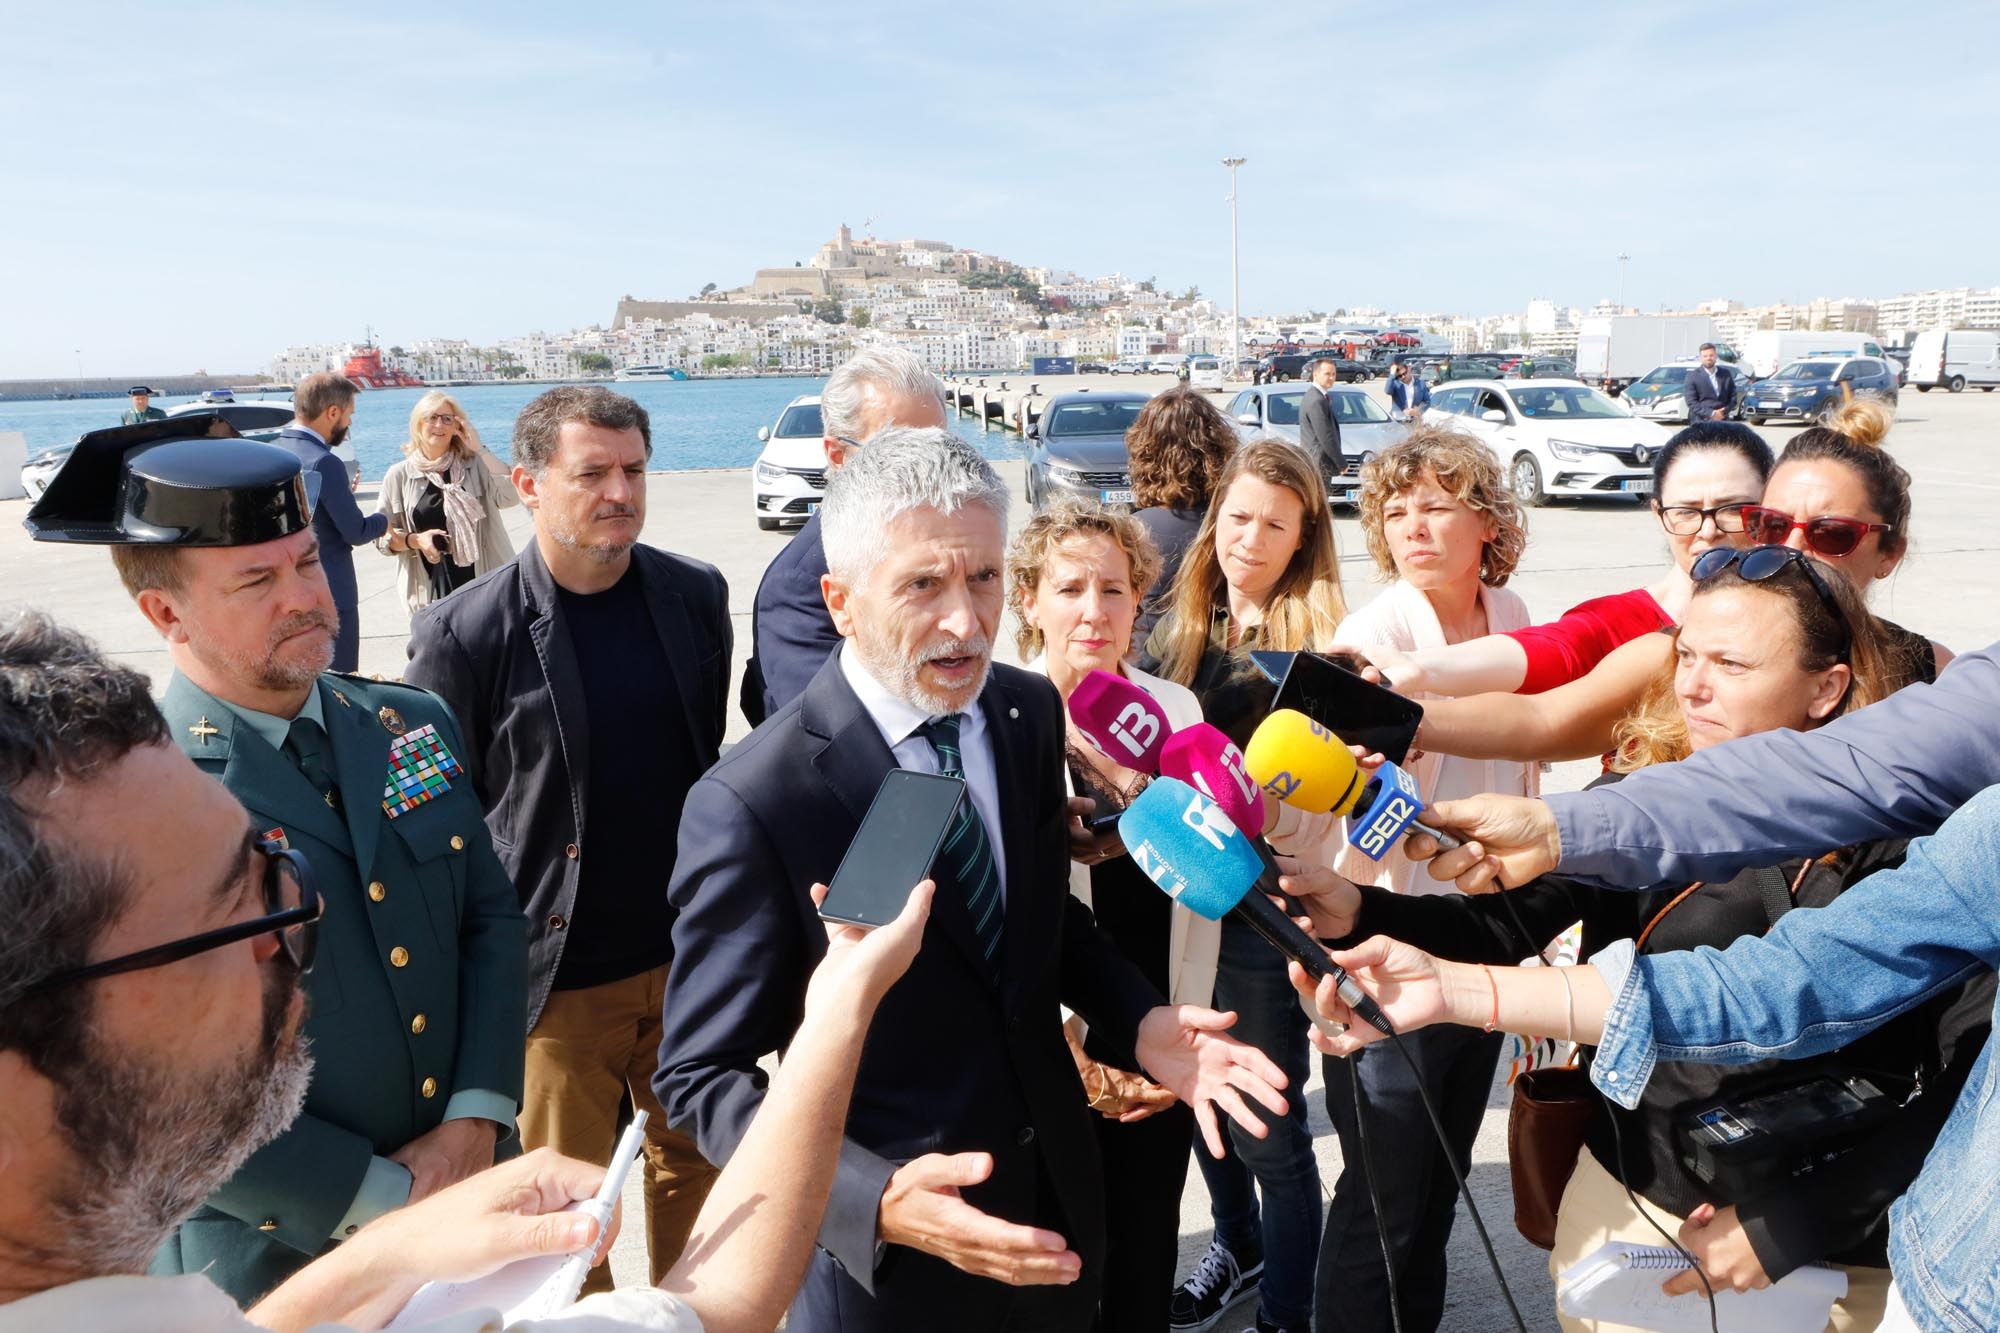 Galería de imágenes del ministro de Interior, Fernando Grande-Marlaska, durante su visita a Ibiza